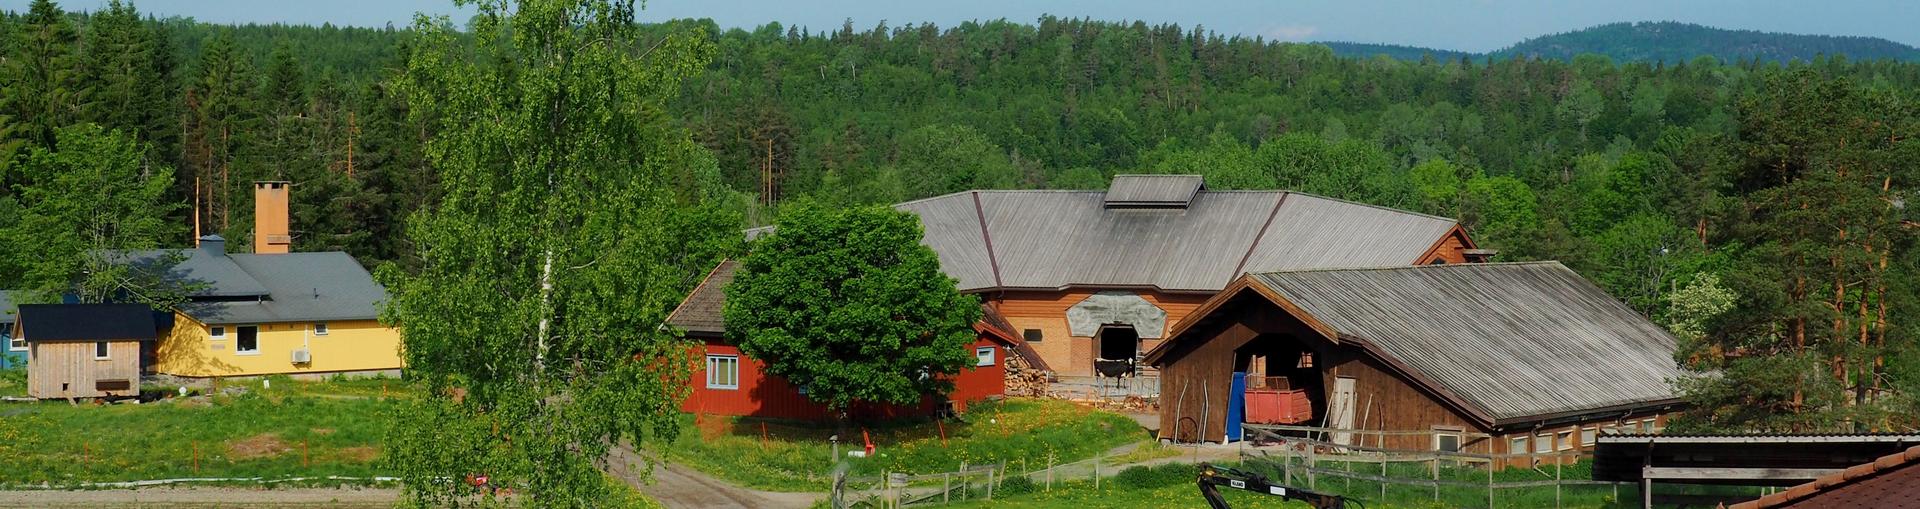 Solborg hus